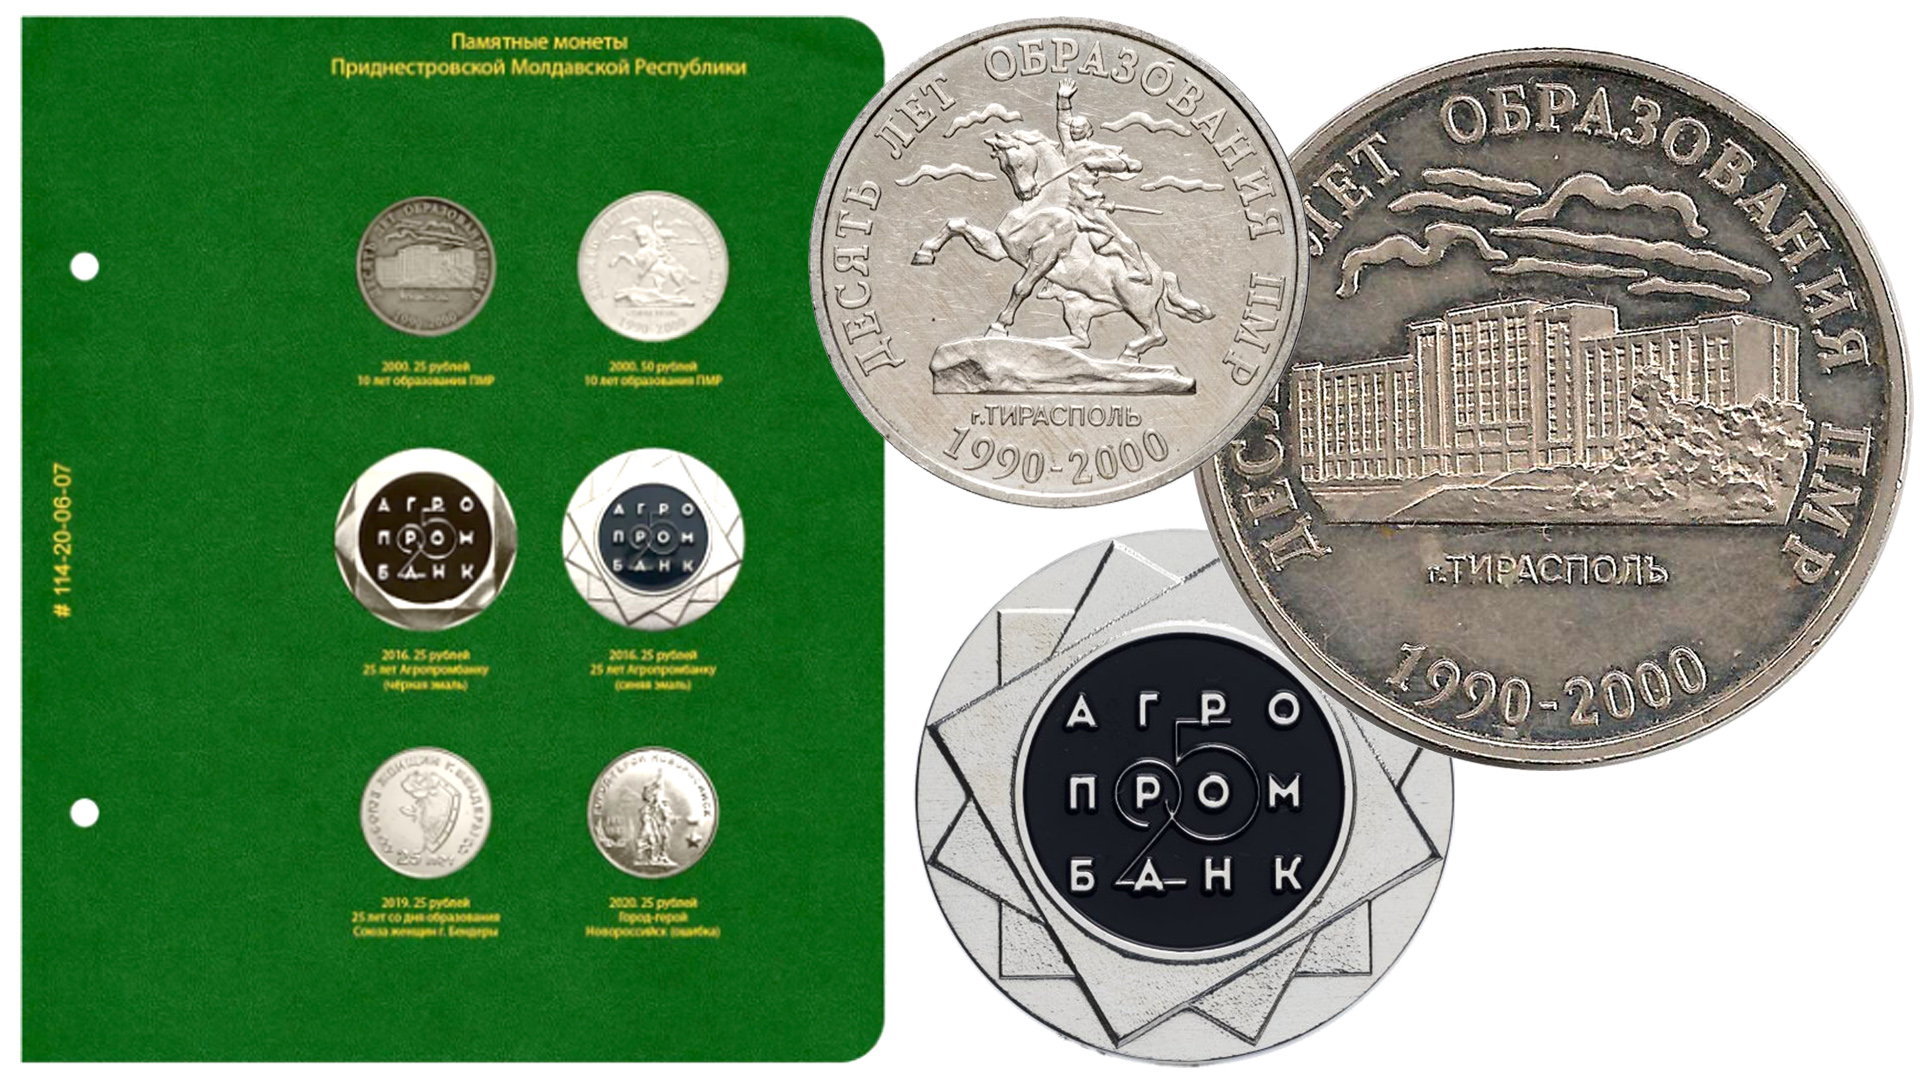 Дополнительный лист в альбом Альбо Нумисматико для редких монет Приднестровья 50 и 25 рублей.